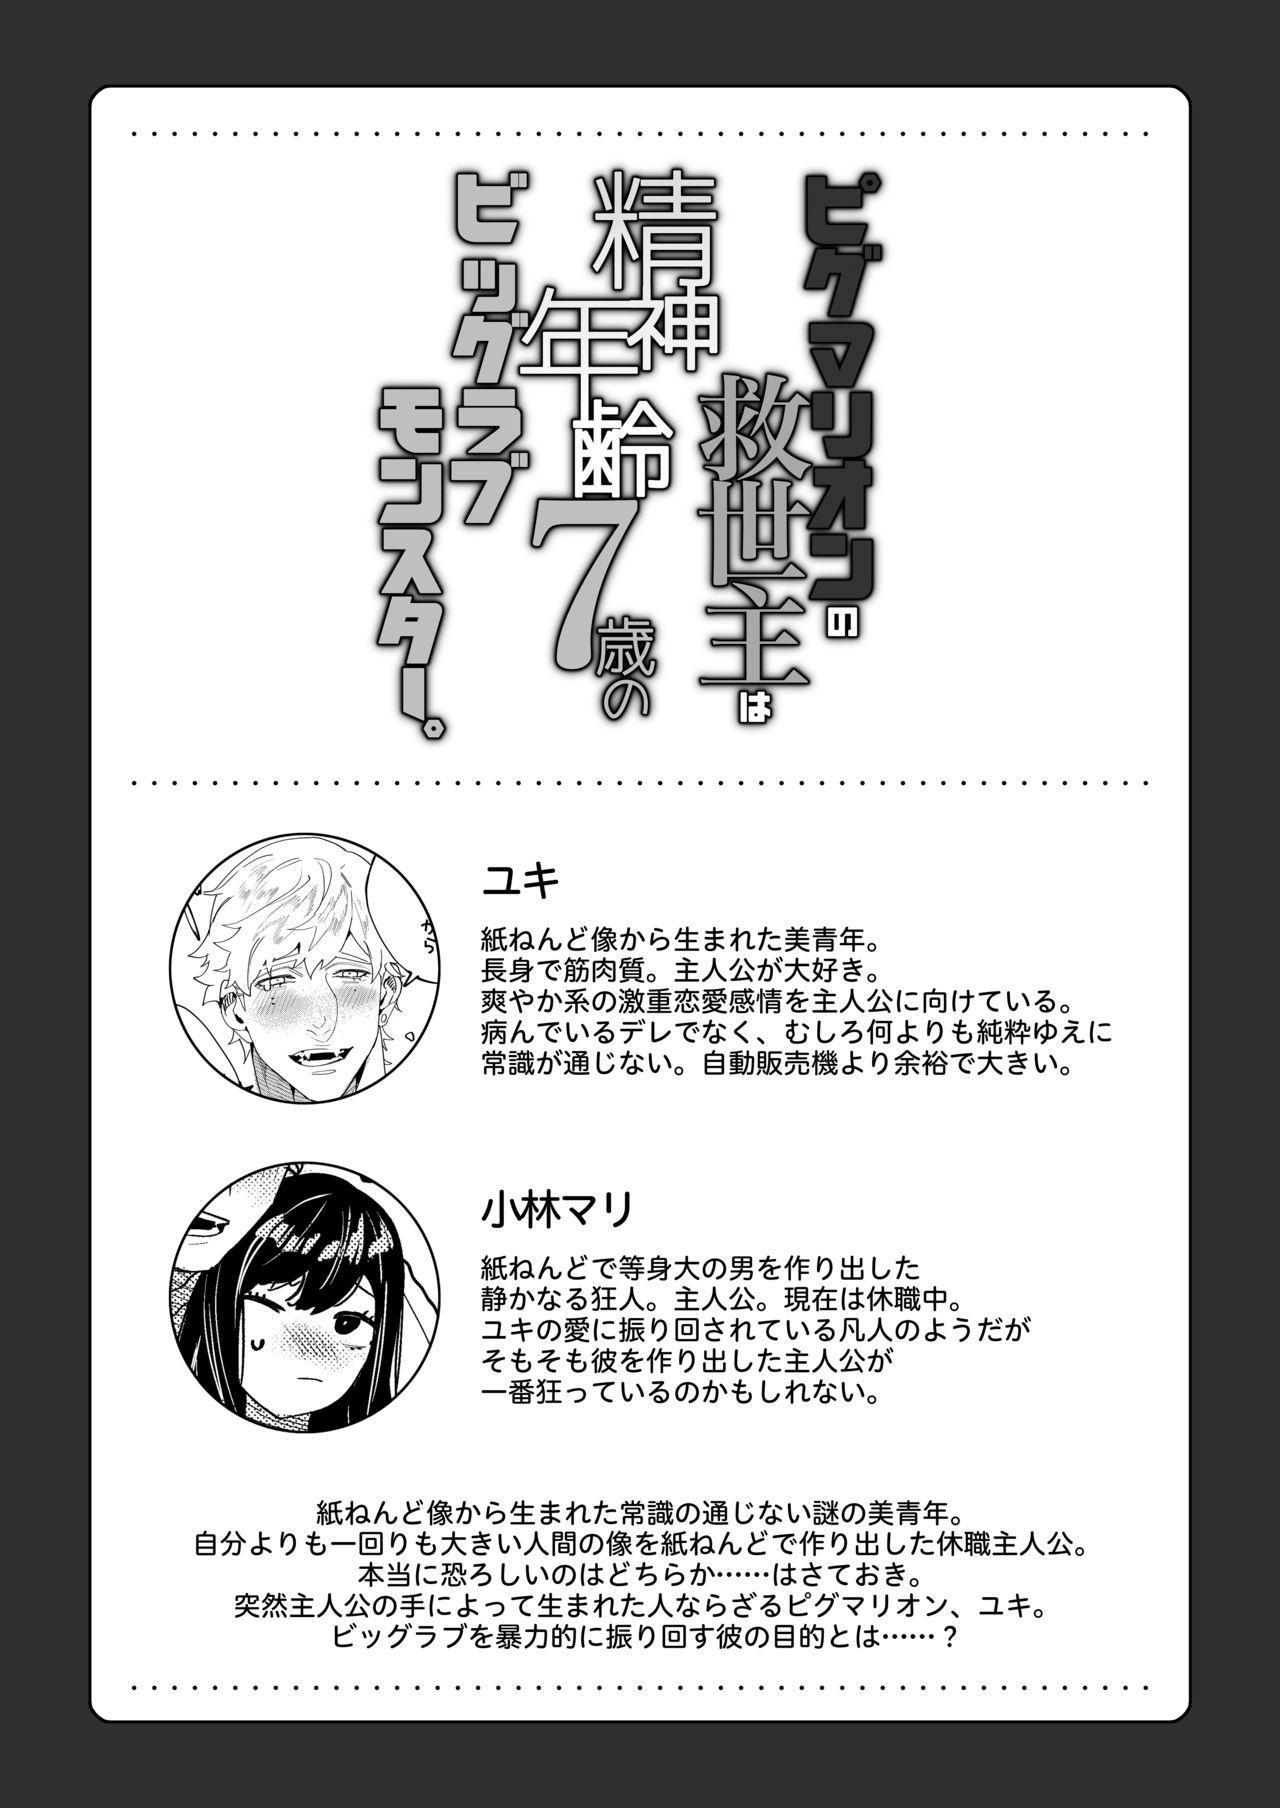 Leggings Pygmalion no Kyuuseishu wa Seishin Nenrei 7-sai no Big Love Monster. - Original Bikini - Page 3